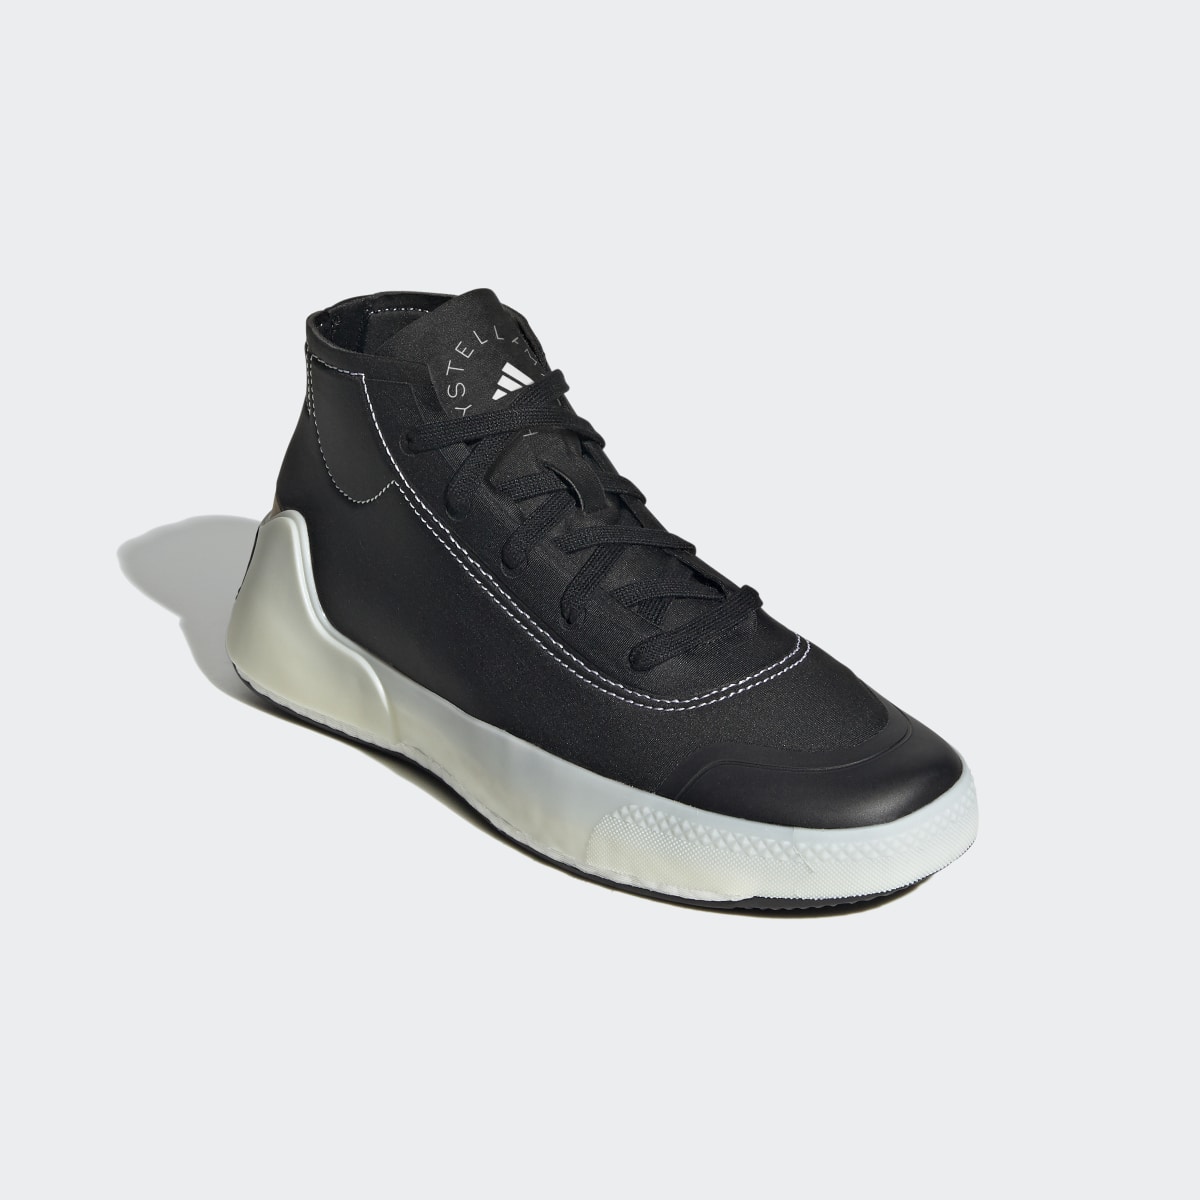 Adidas by Stella McCartney Treino Mid-Cut Shoes. 17